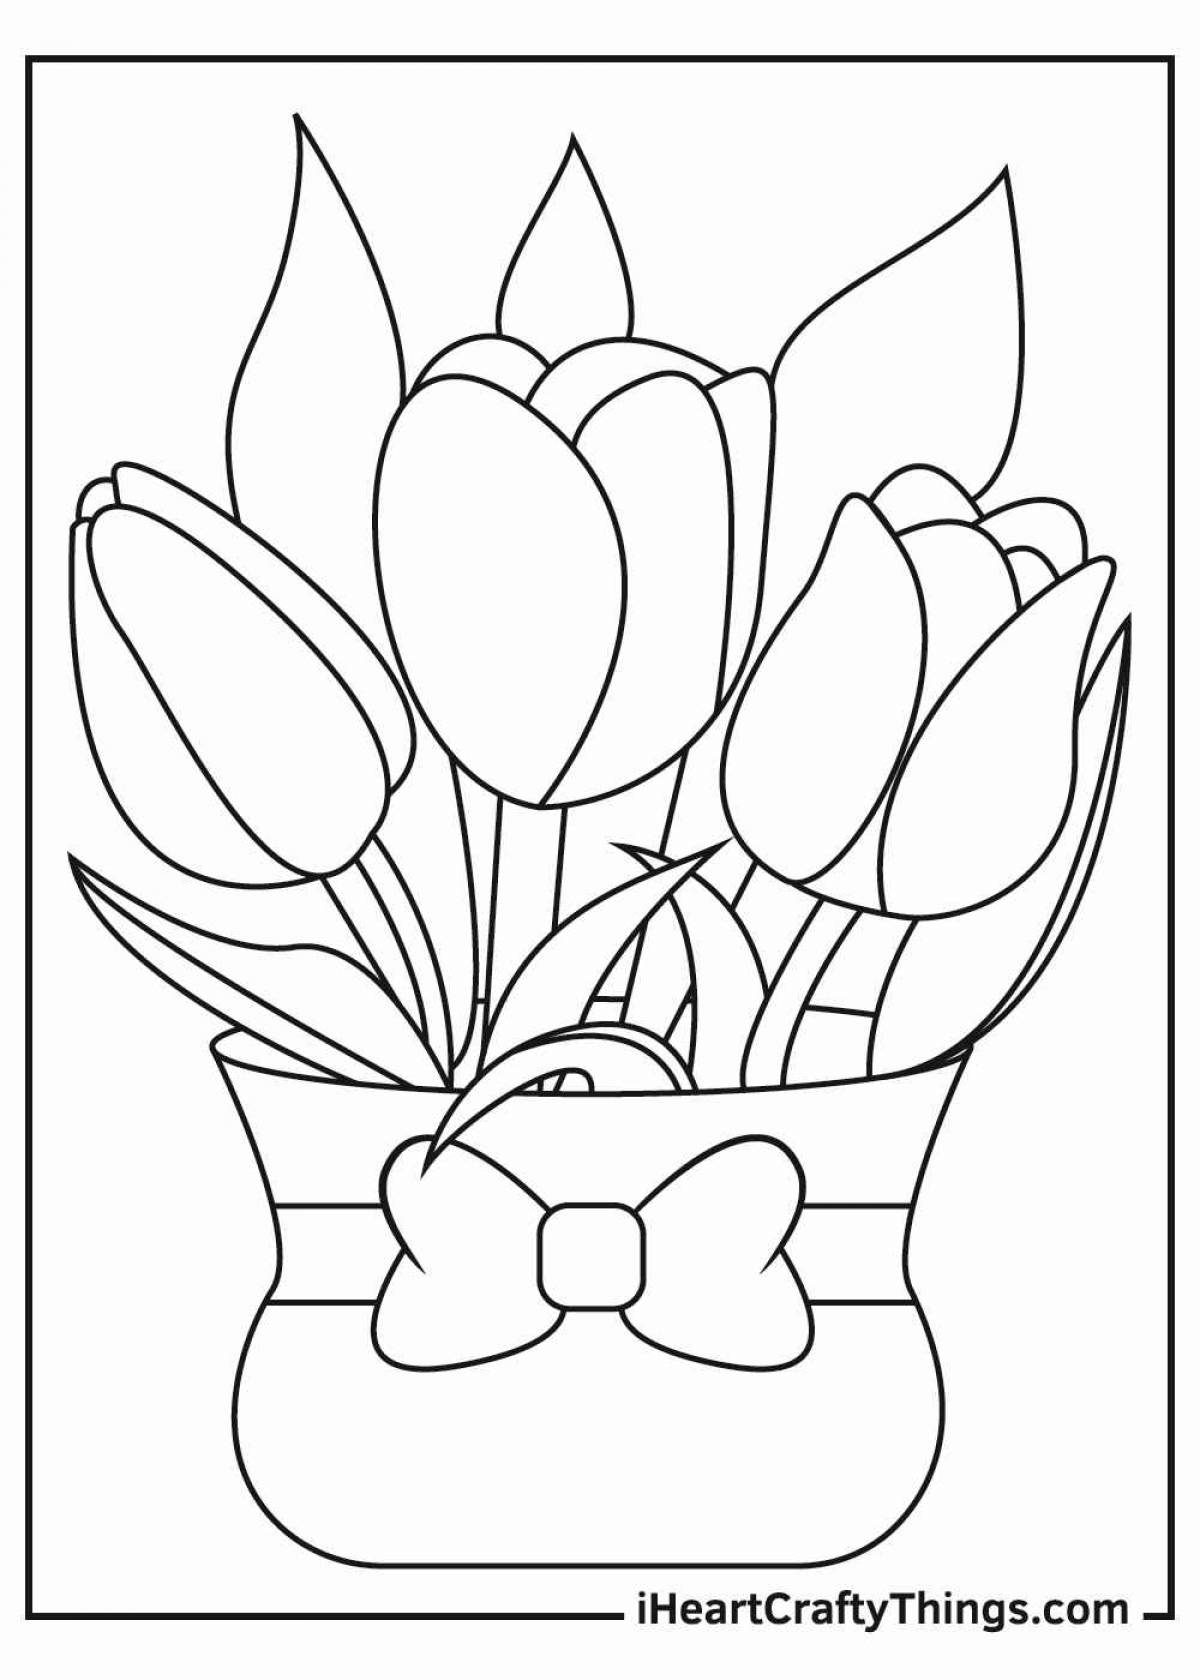 Великолепные тюльпаны раскраски для детей